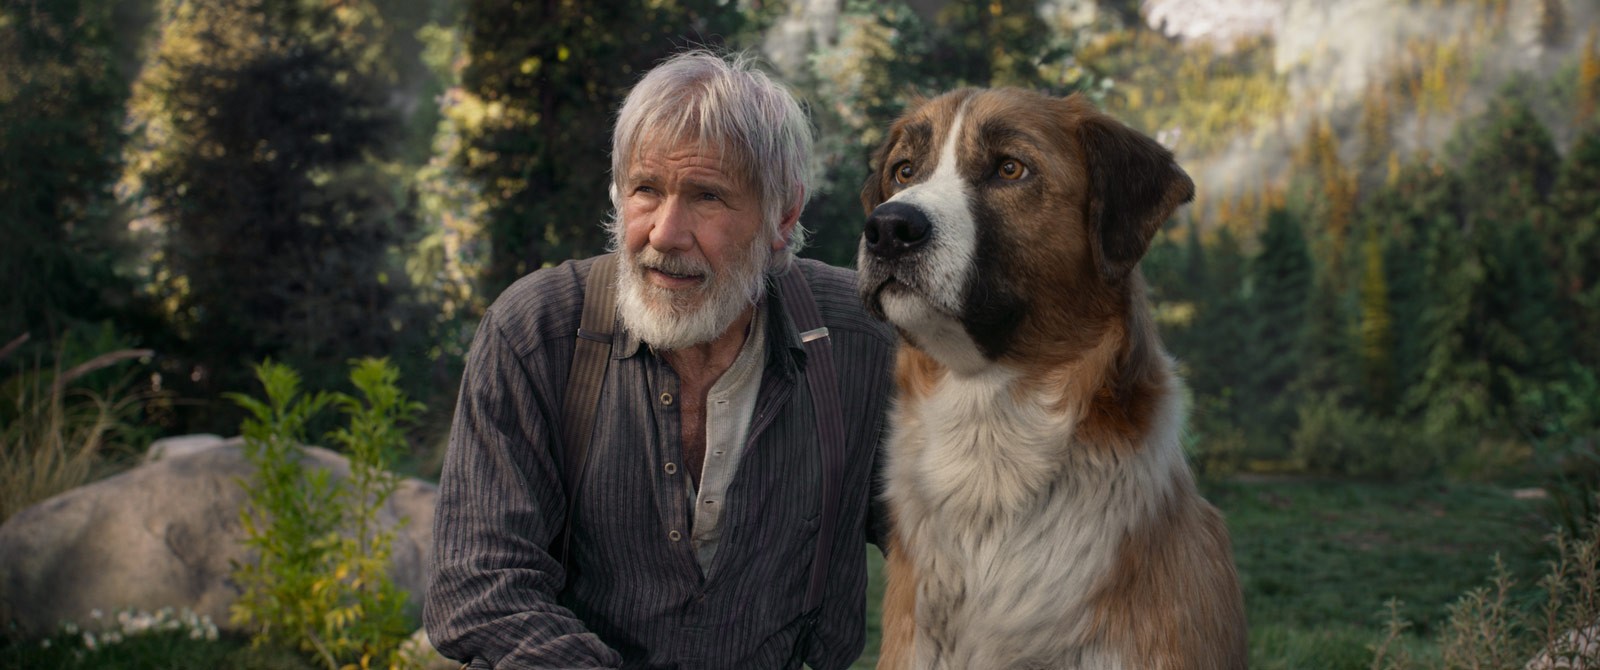 4 filmes tocantes sobre animais que você não pode deixar de assistir. Acima: Harrison Ford em "O Chamado da Floresta" (Foto: Divulgação)